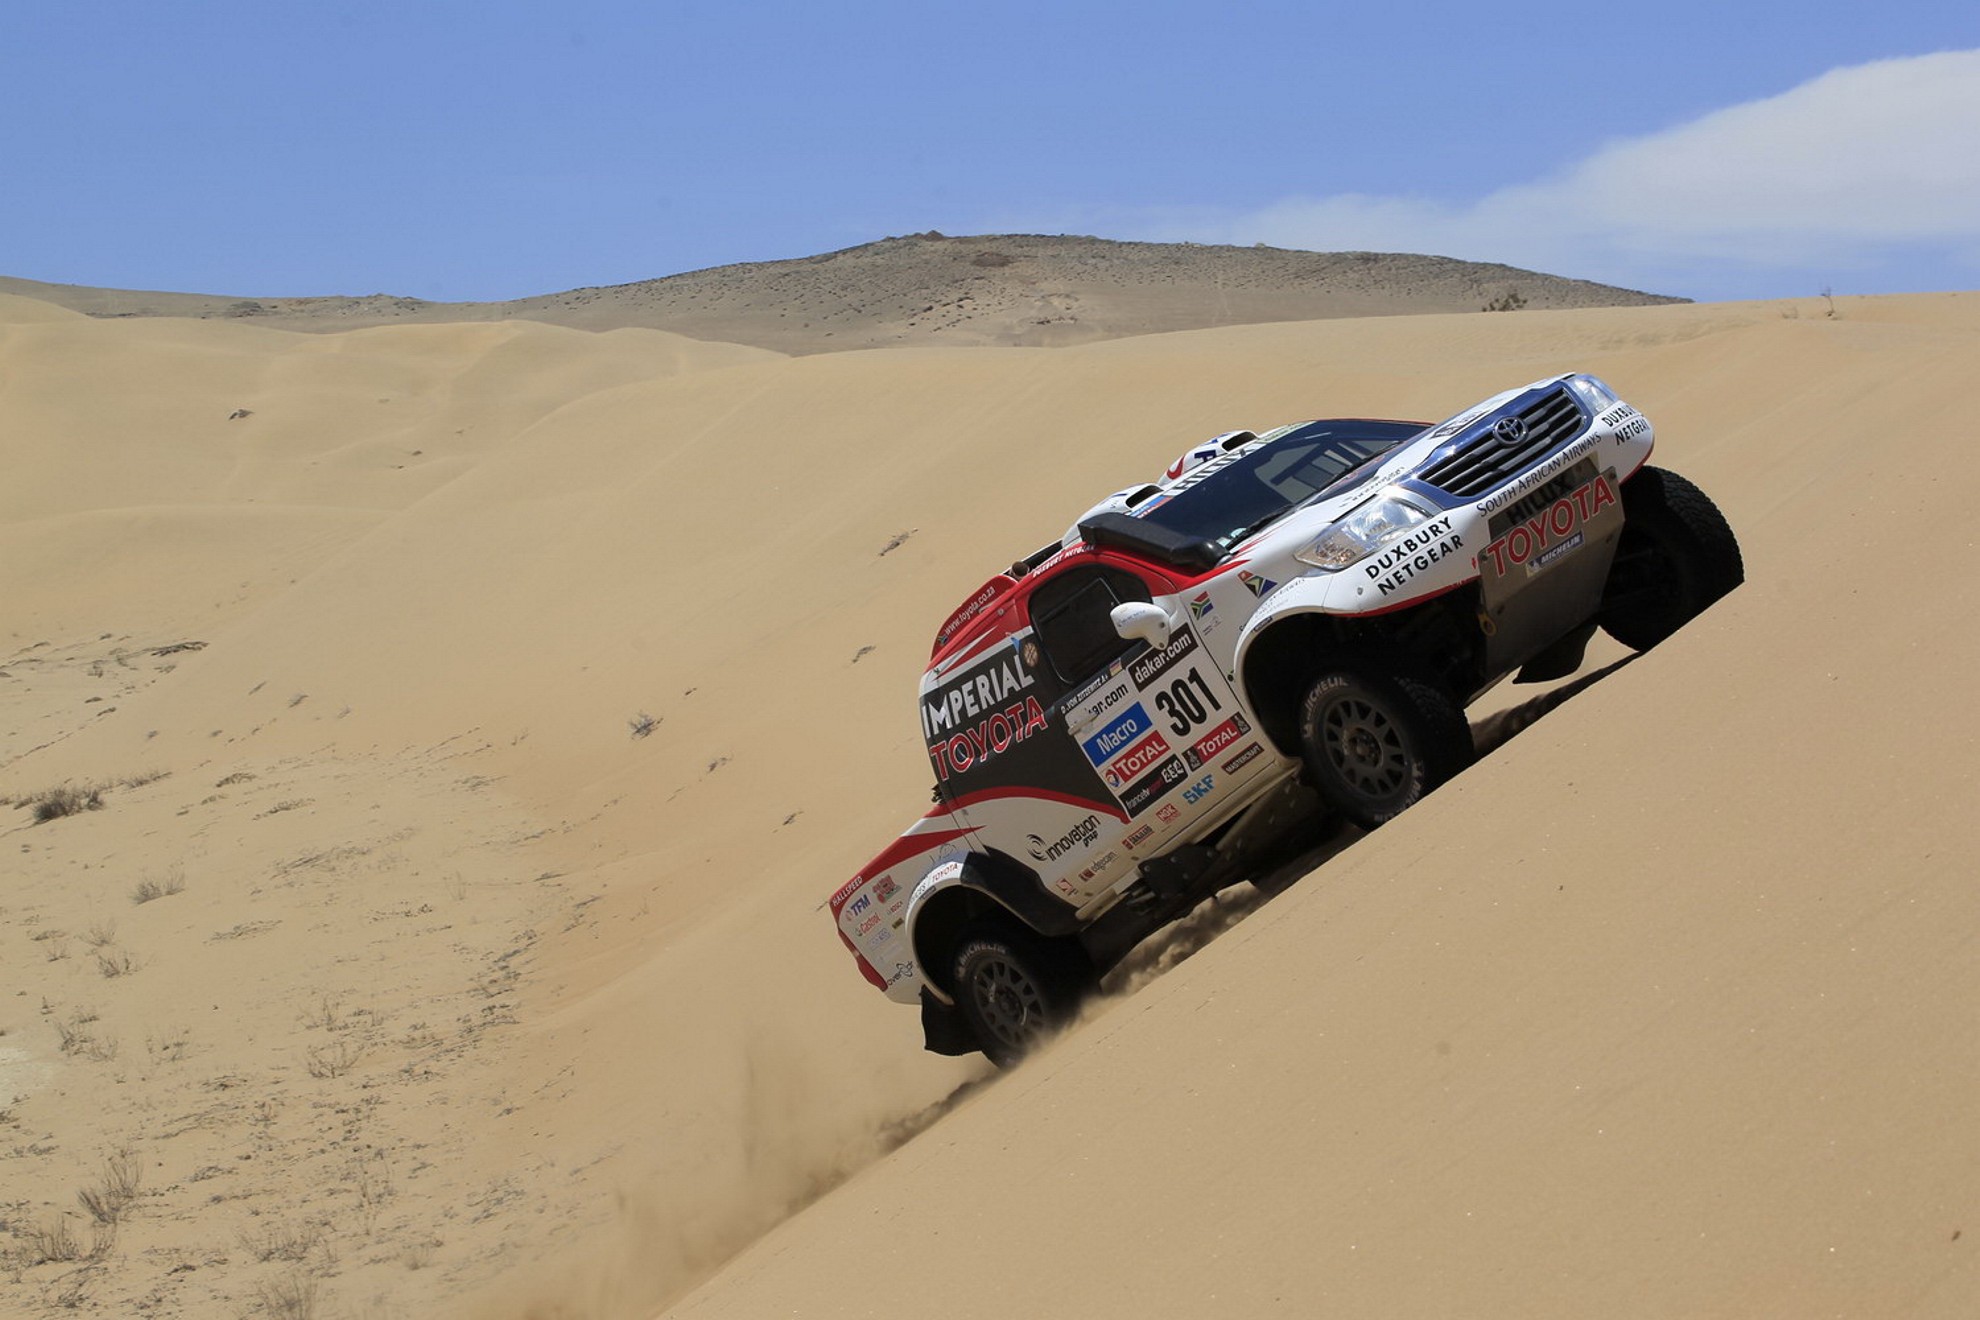 Giniel De Villiers and Dirk von Zitzewitz finish 2nd in the Dakar 2013